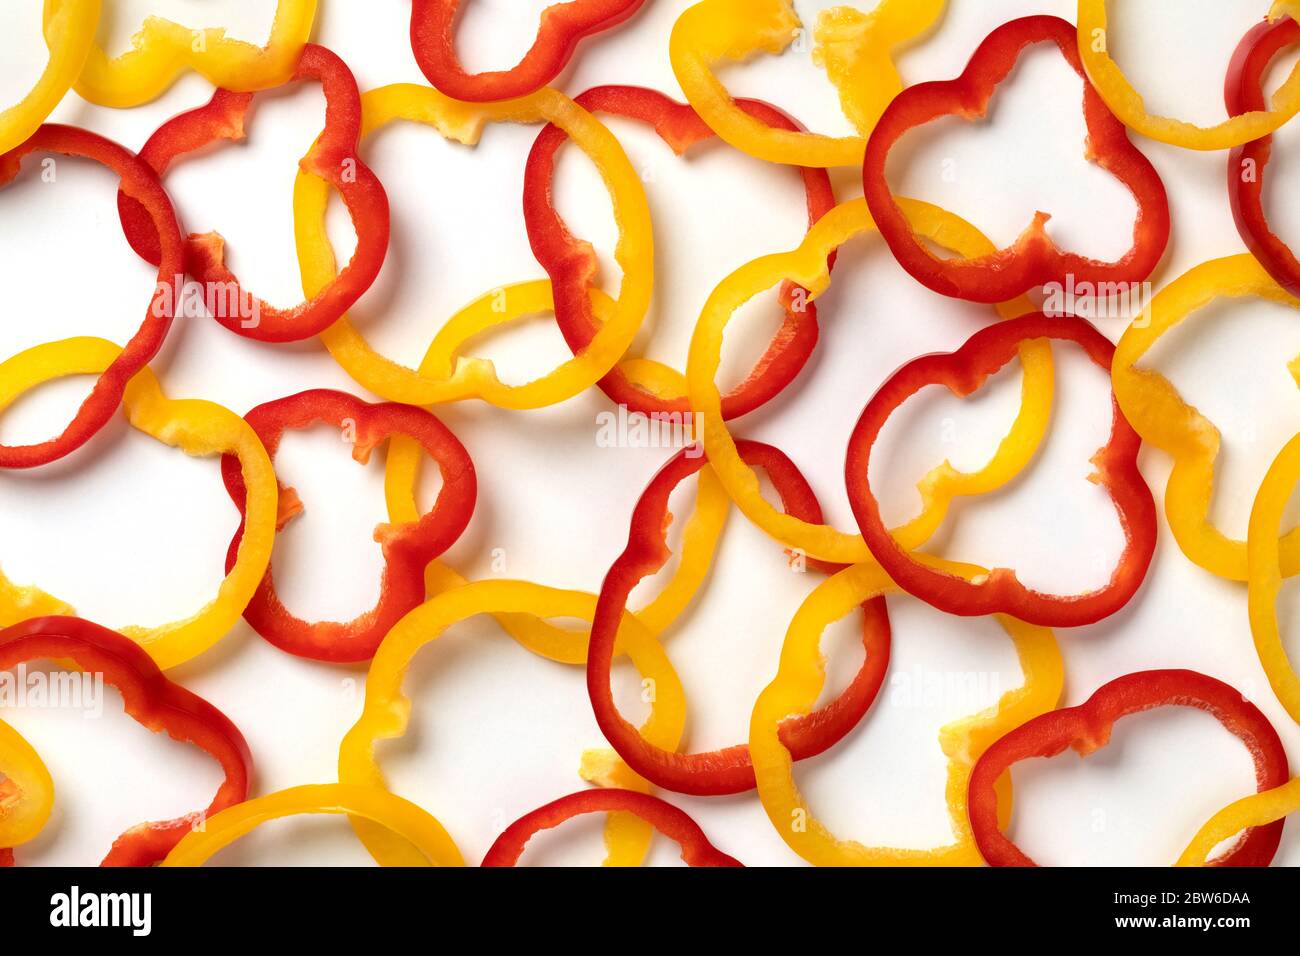 Frisch geschnittene Ringe aus roter und gelber Paprika schließen sich auf weißem Hintergrund Stockfoto